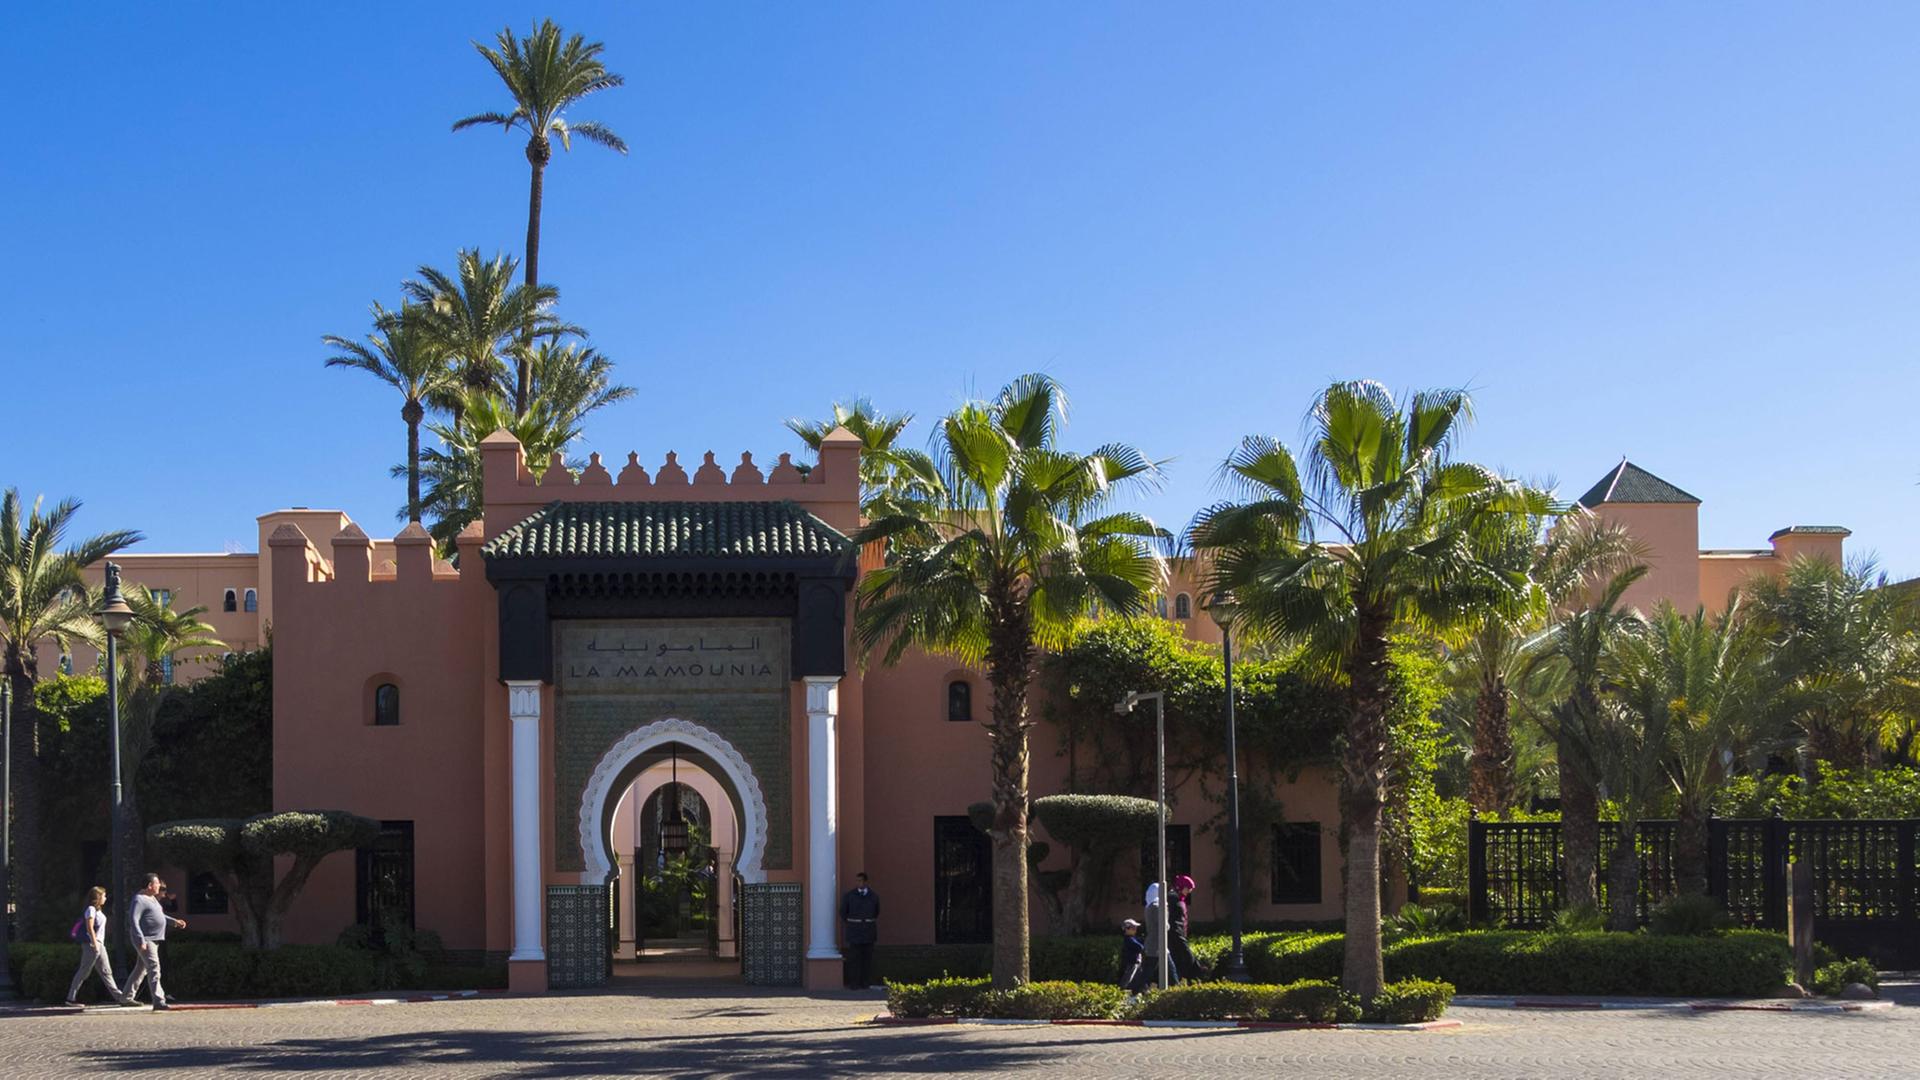 Außenansicht des Hotels Mamounia in Marrakesch, Marokko